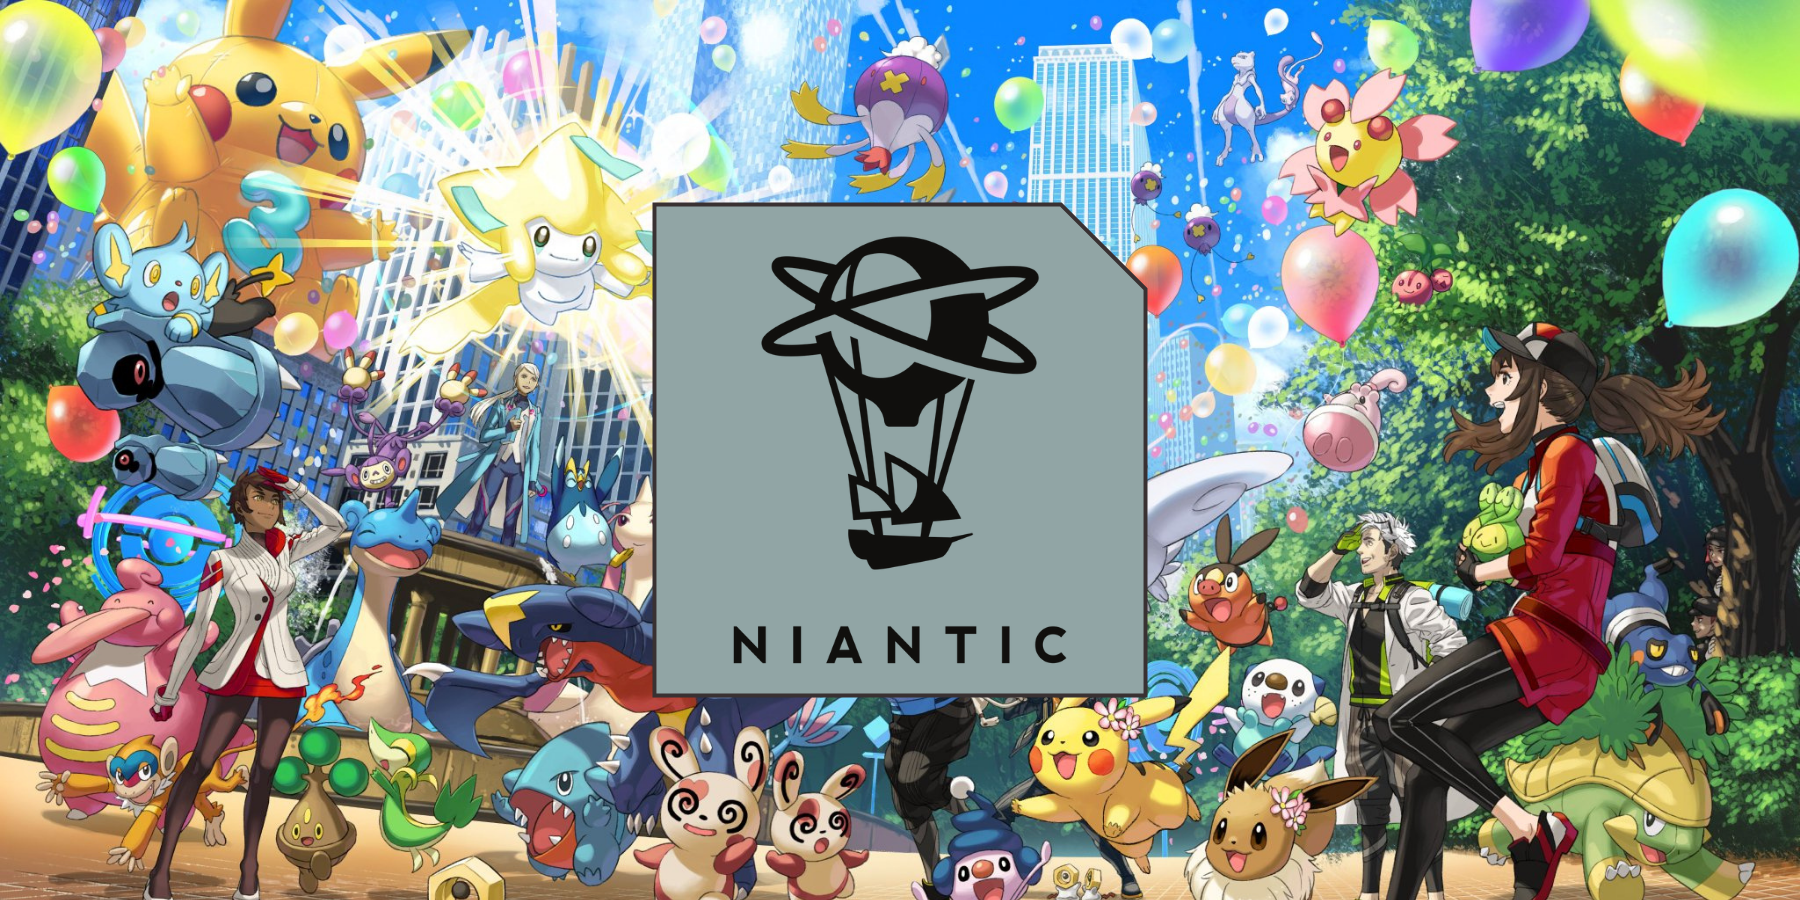 Niantic requiere que los solicitantes de empleo tengan el rango 7 o superior de la liga de batalla Go para trabajar en Pokémon GO